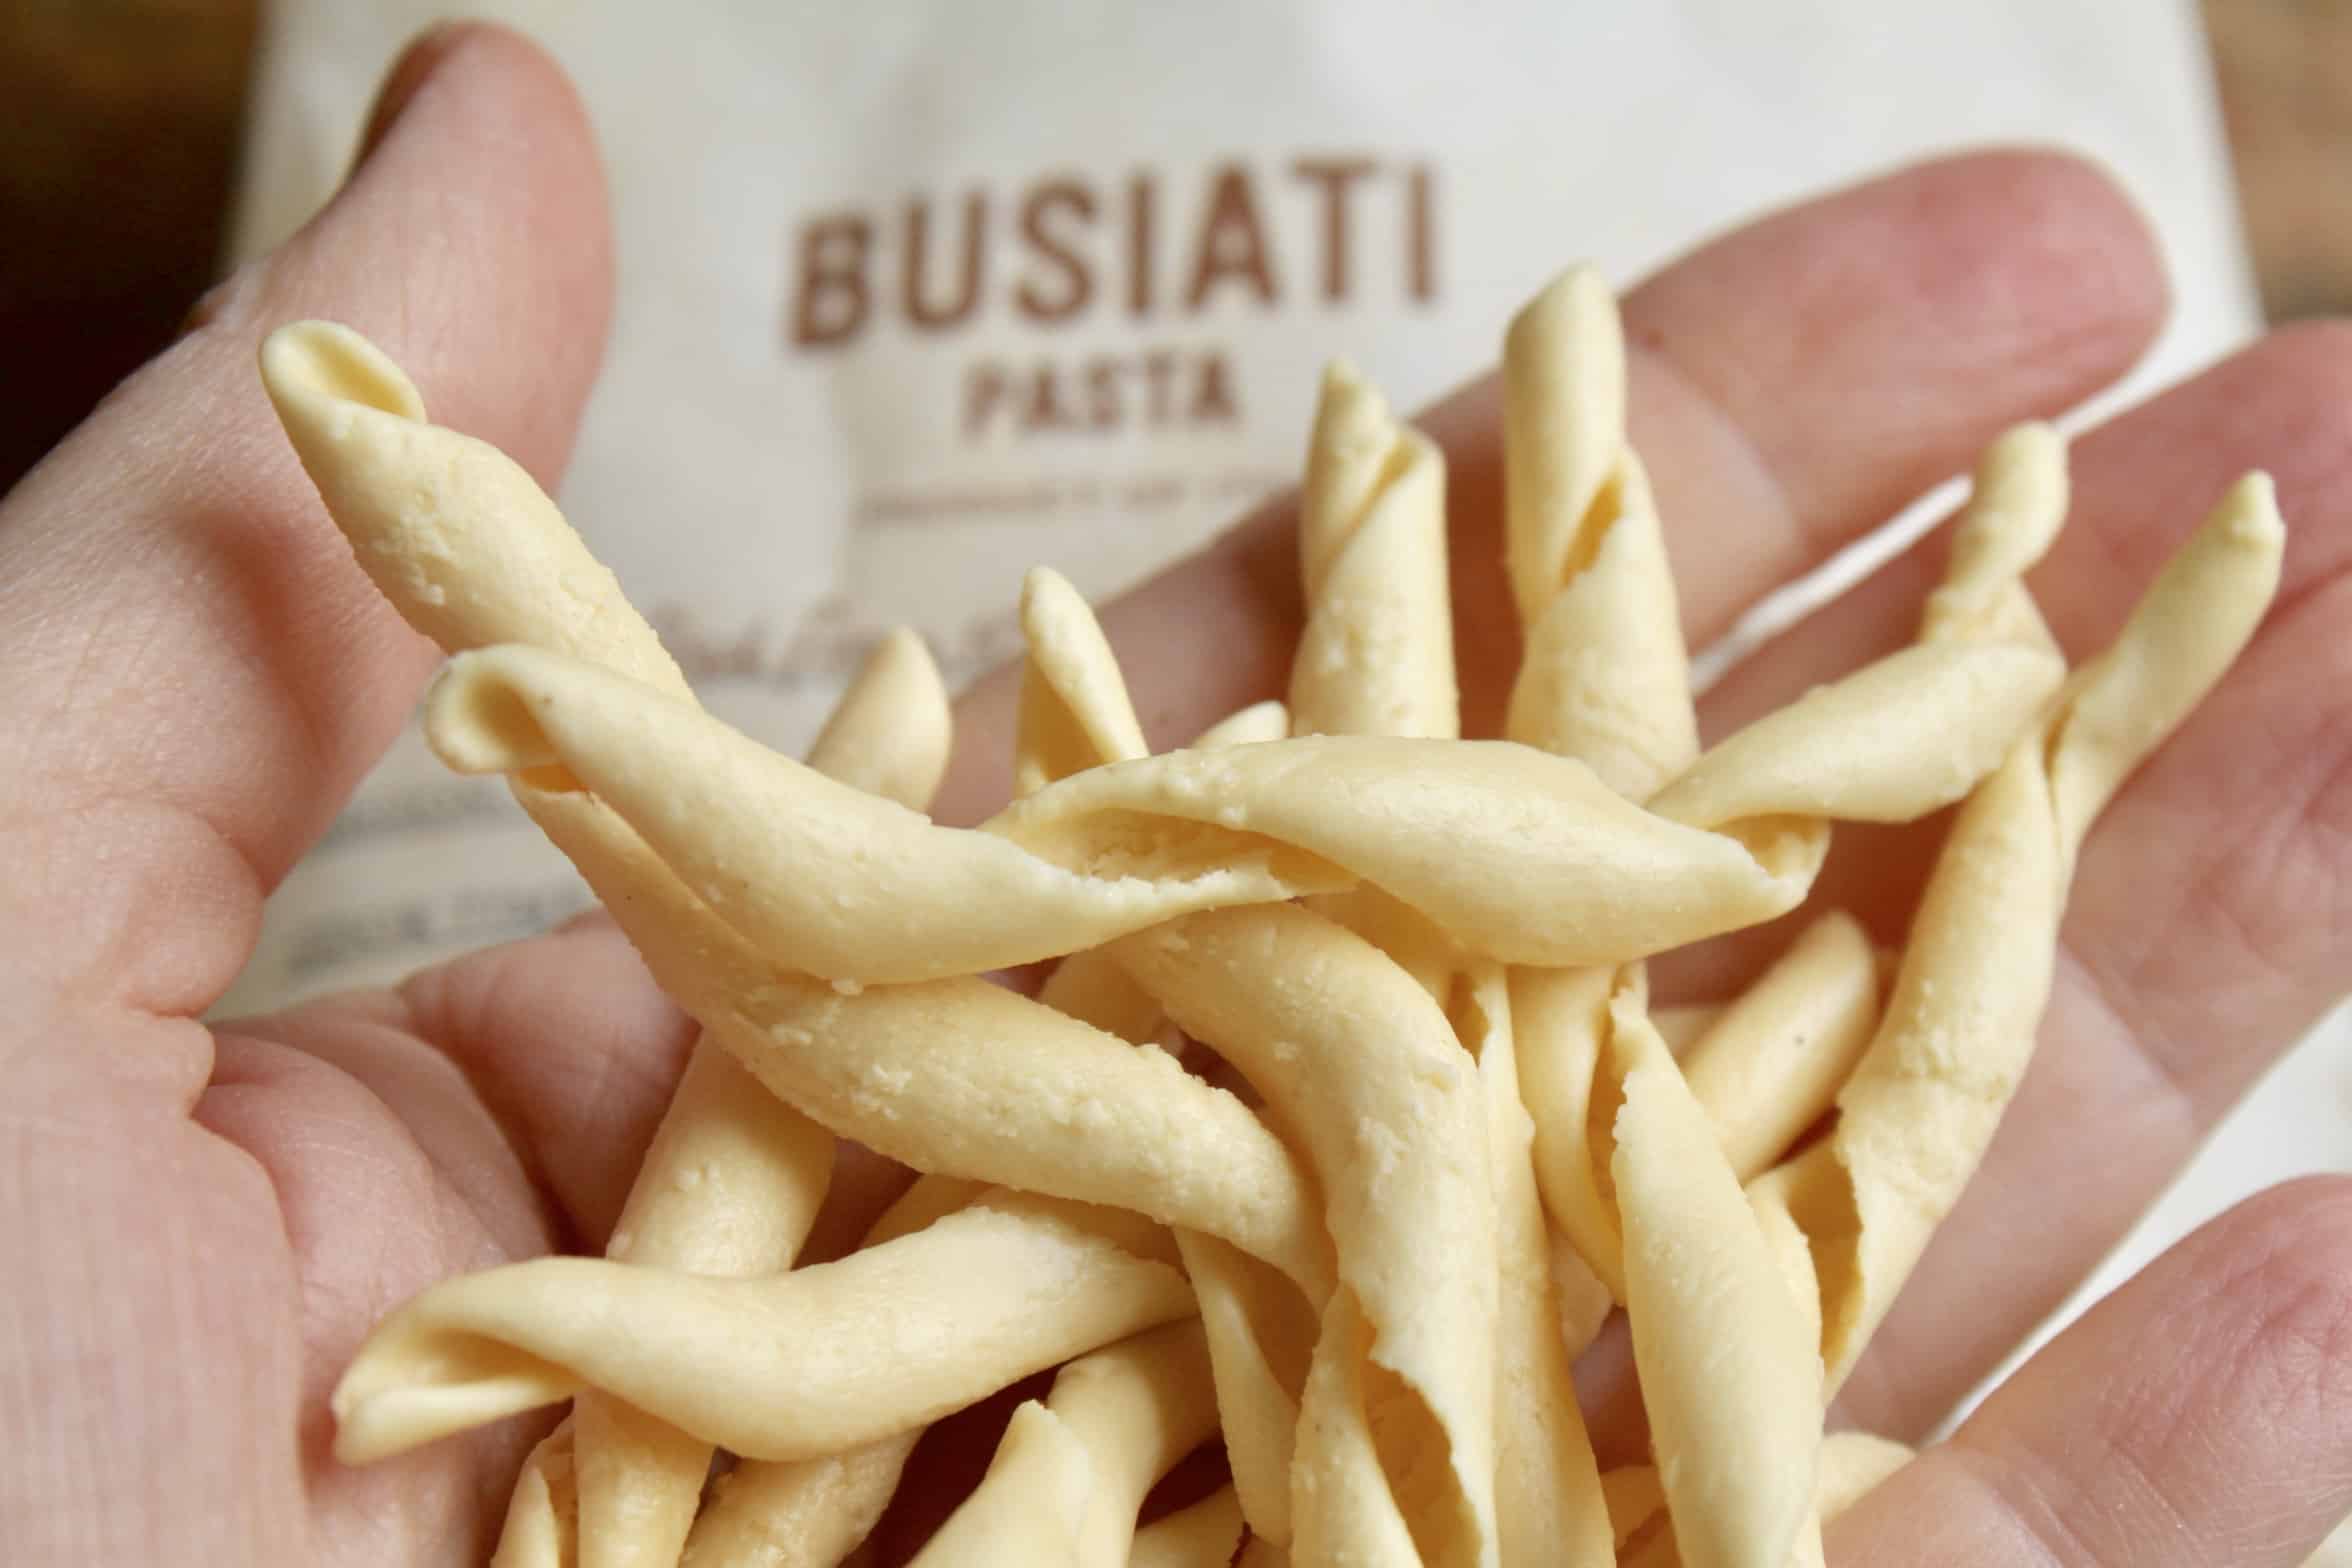 busiati pasta in a hand